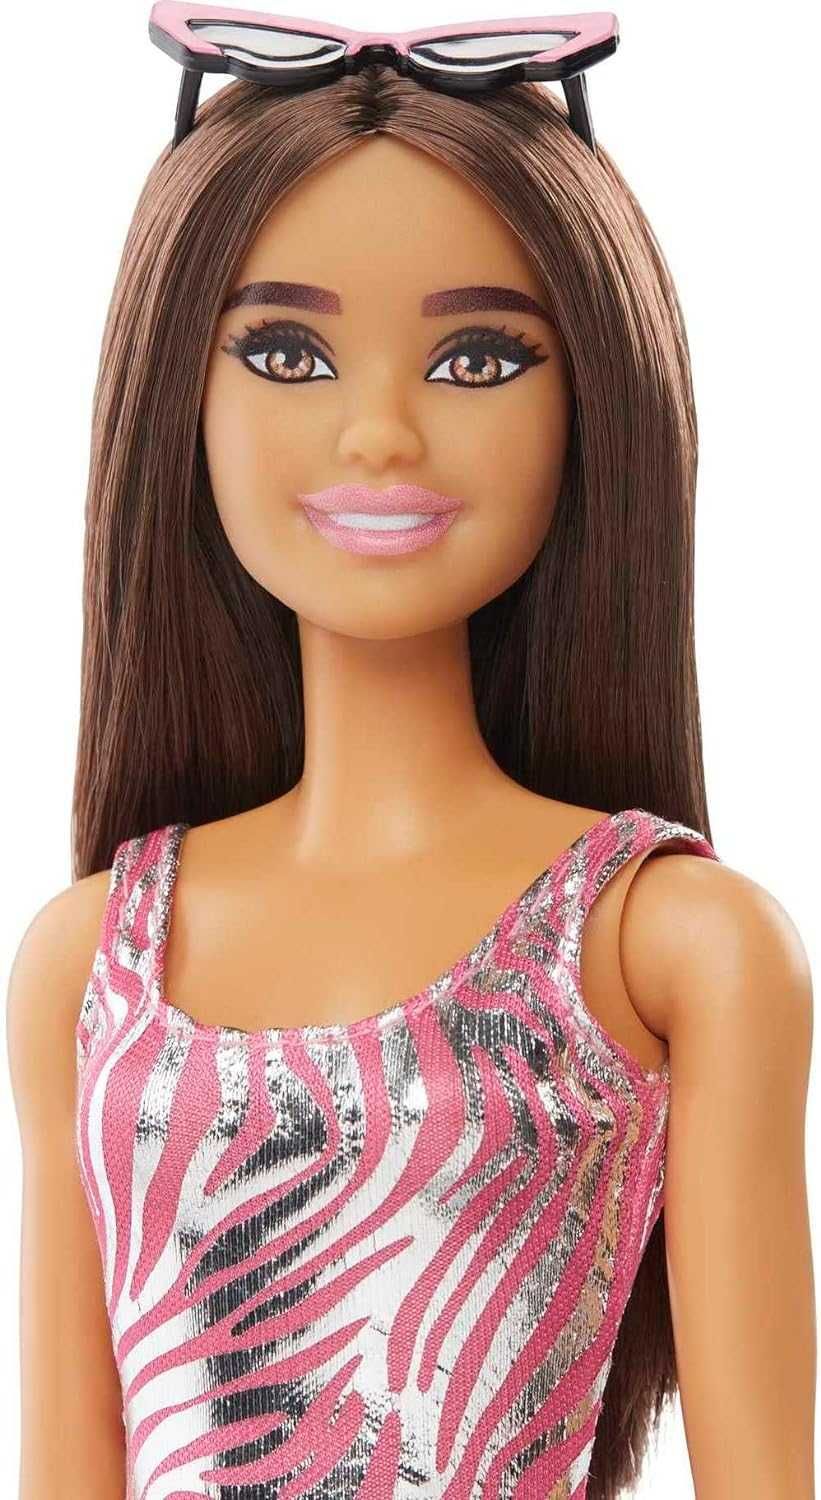 Кукла Барби Адвент календарь с одеждой и аксессуарами Barbie HKB09